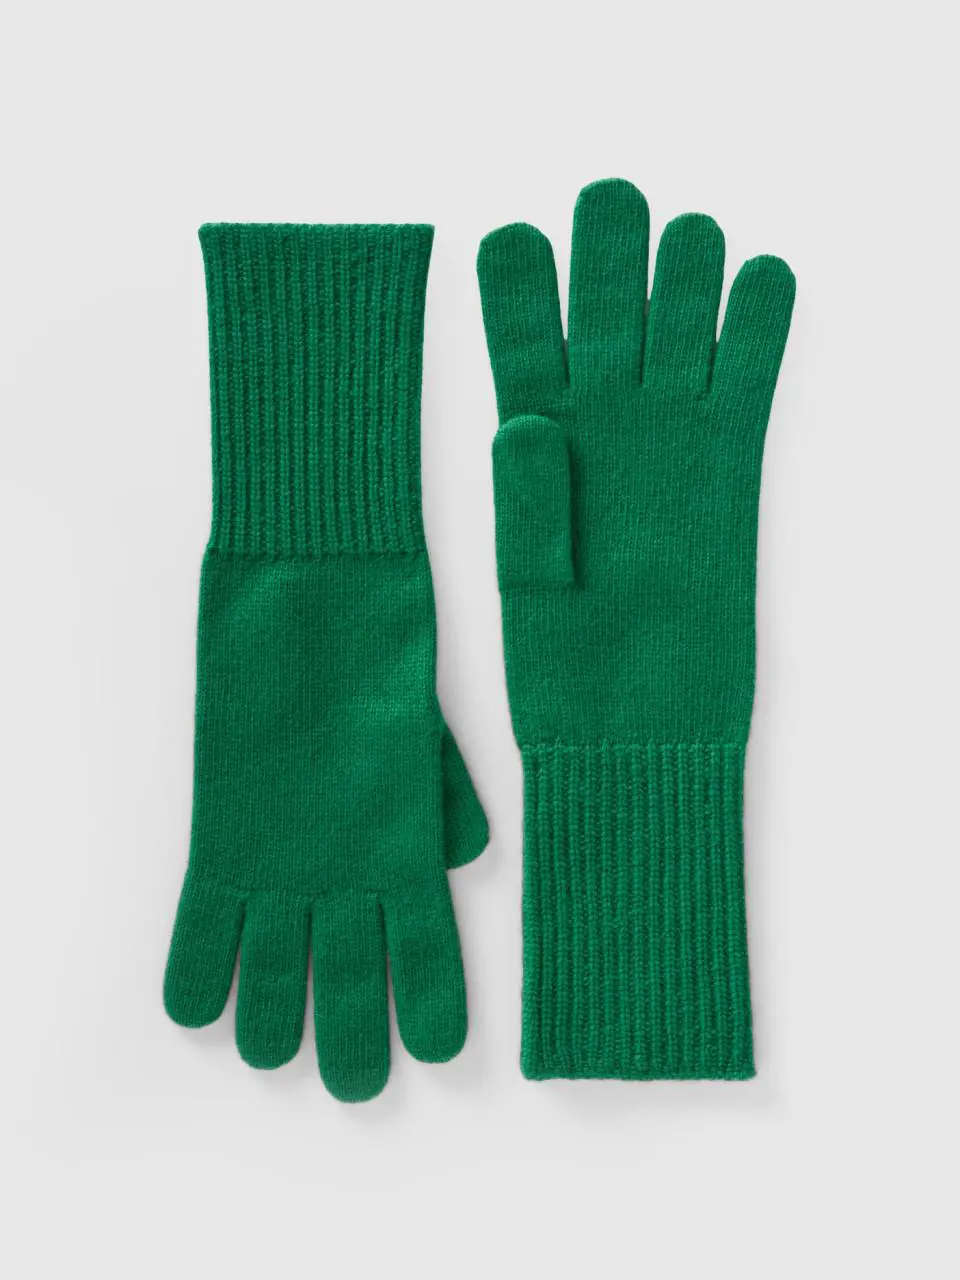 Benetton wool blend gloves. 1